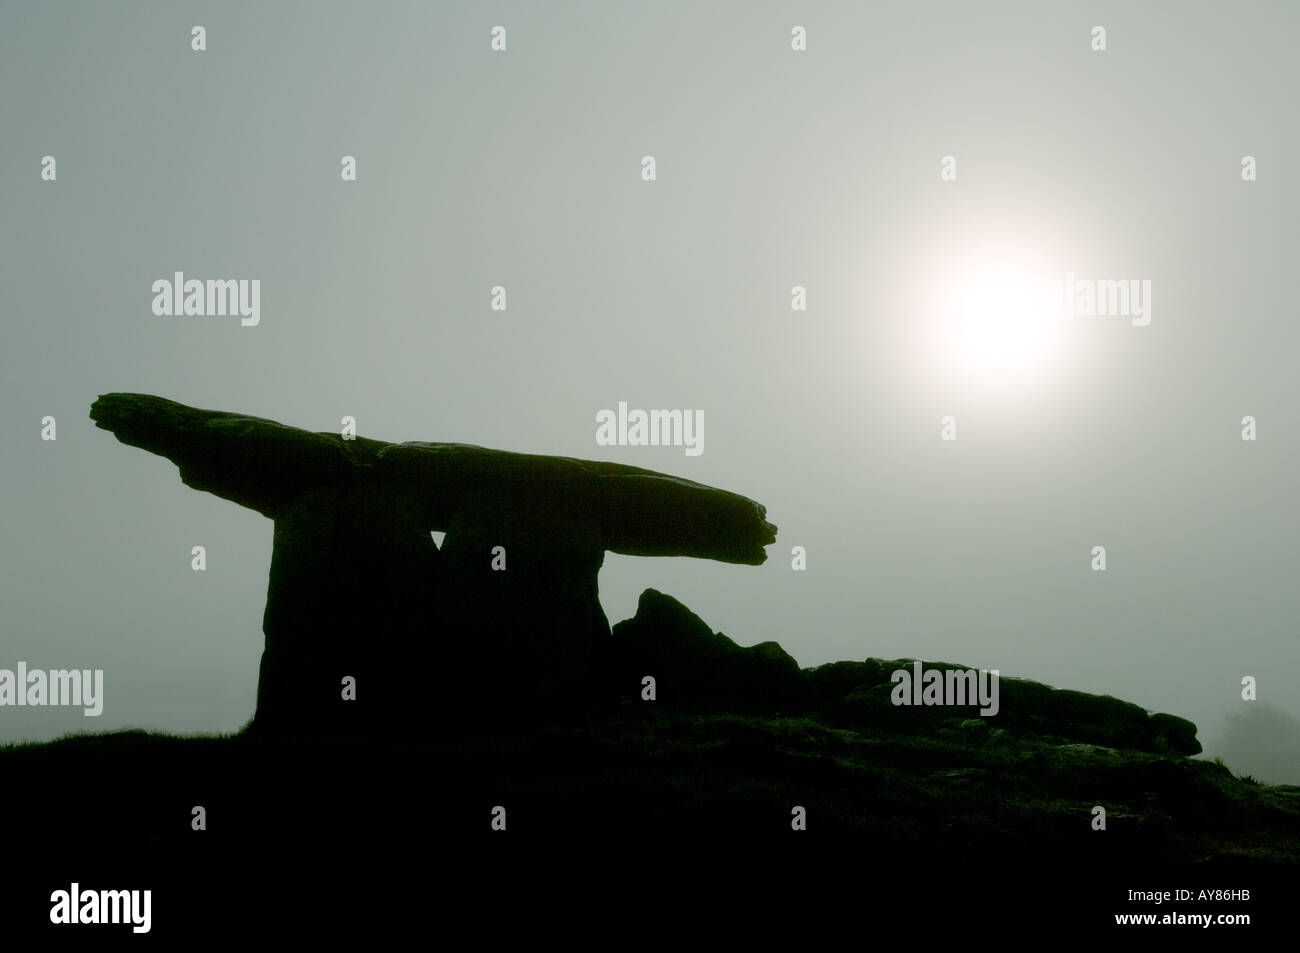 Dolmen de Poulnabrone tombeau préhistorique silhouetté contre lune soleil dans la brume sur le plateau calcaire du Burren, comté de Clare, Irlande. Banque D'Images